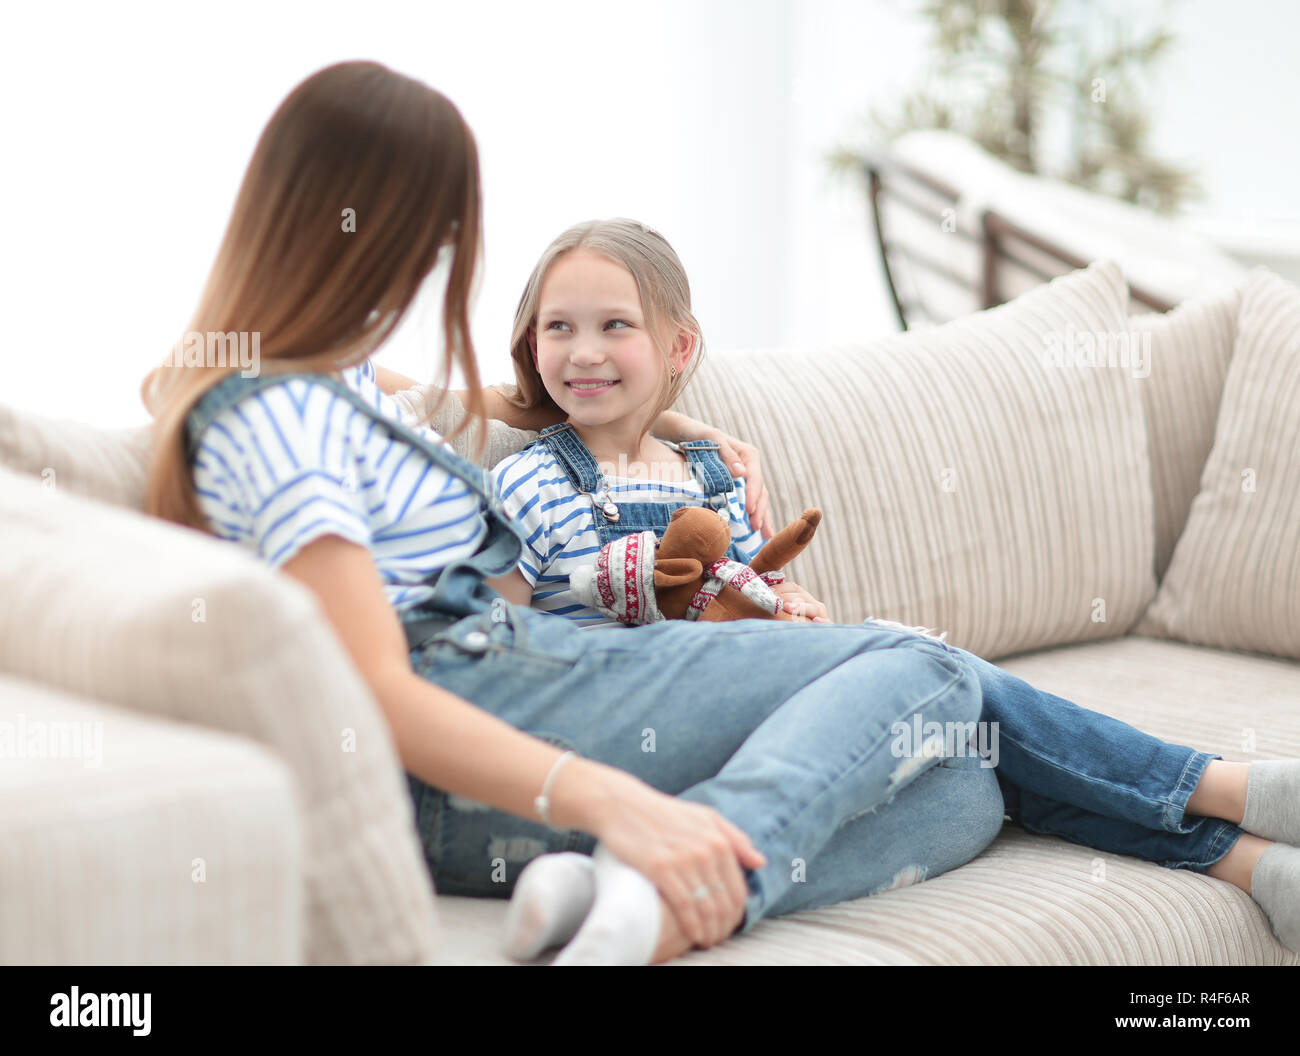 Маму на диване видео. Мама с дочкой сидят на диване. С дочкой сидим на диване. Мать сидит на кровати с дочерью. Сидит дома картинки дочь.